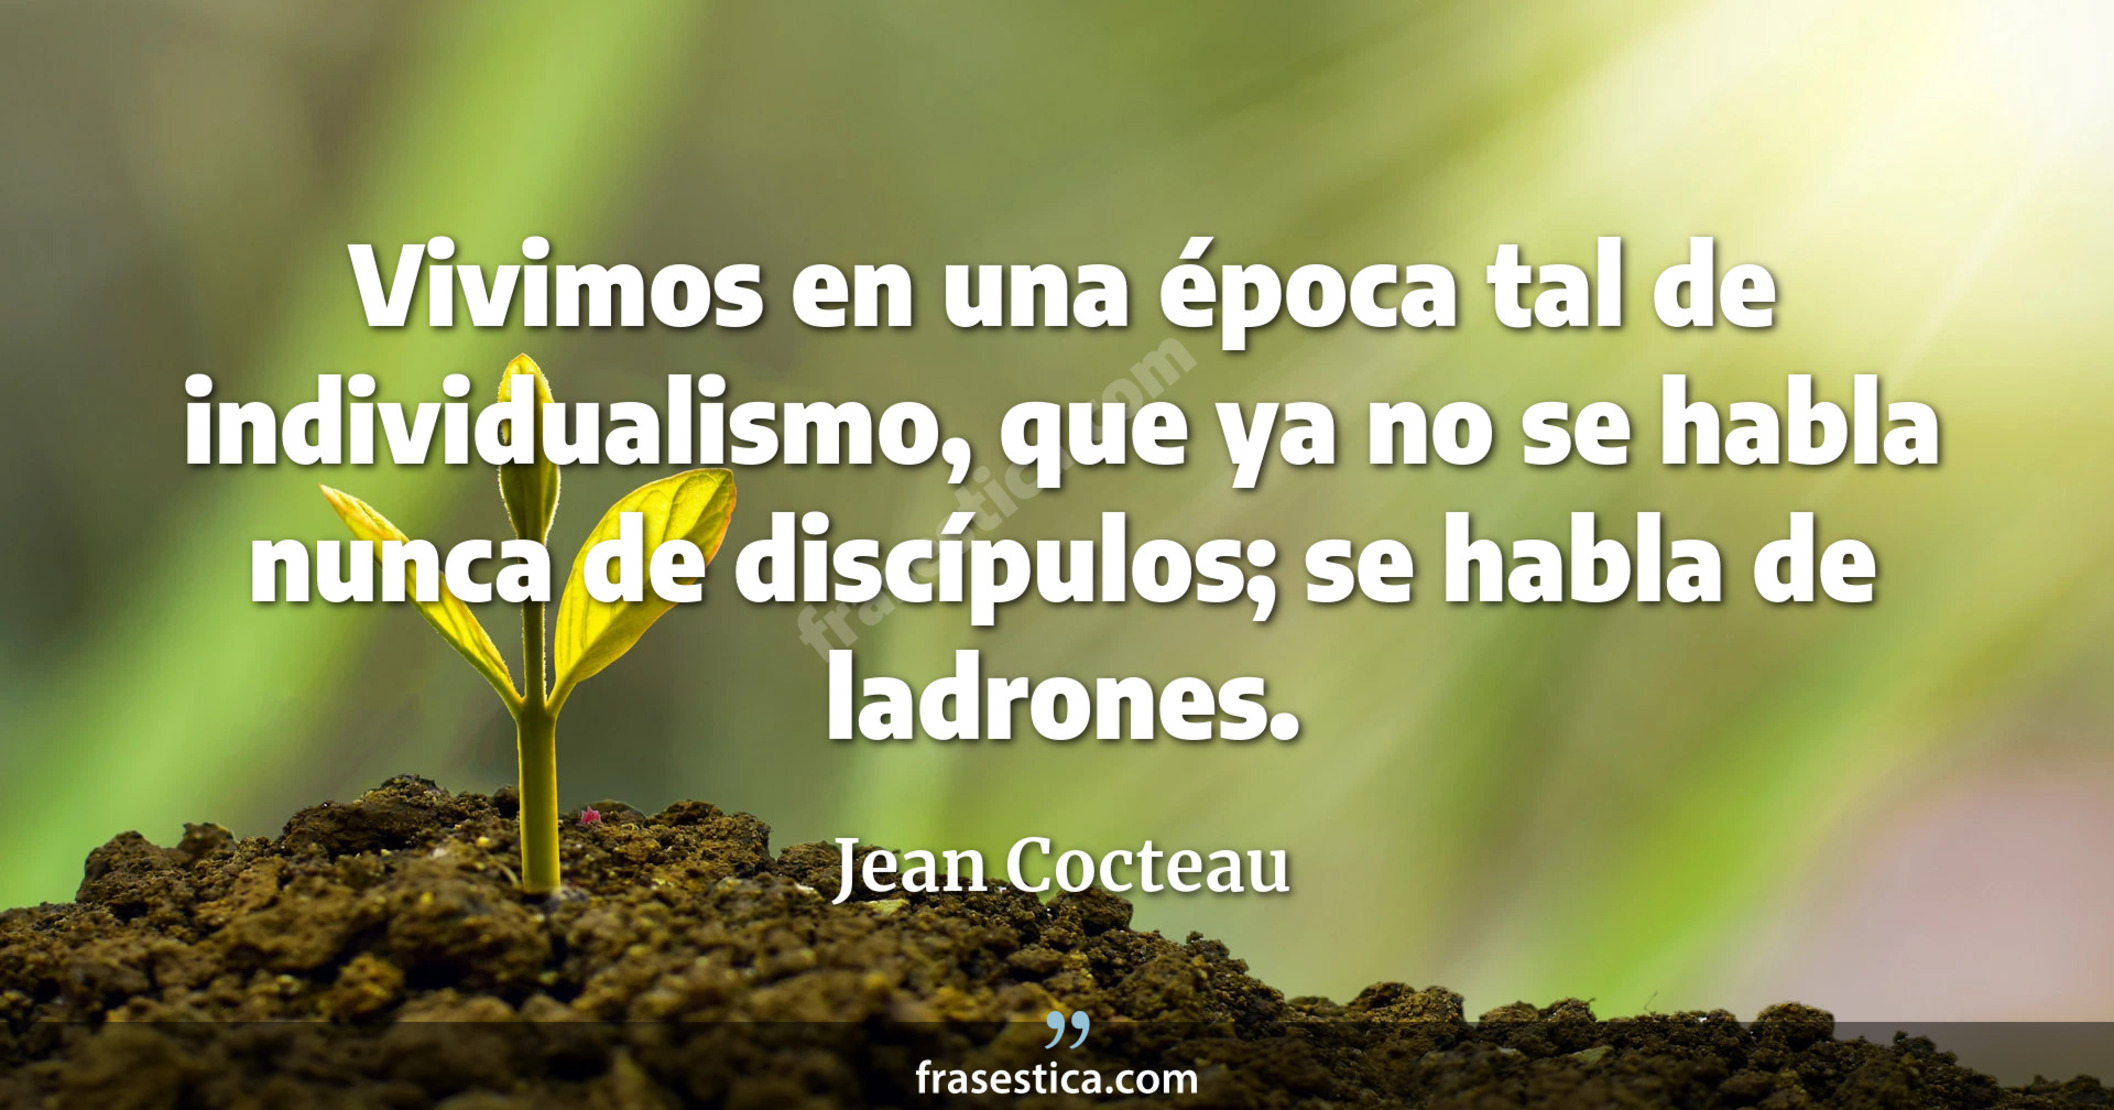 Vivimos en una época tal de individualismo, que ya no se habla nunca de discípulos; se habla de ladrones. - Jean Cocteau